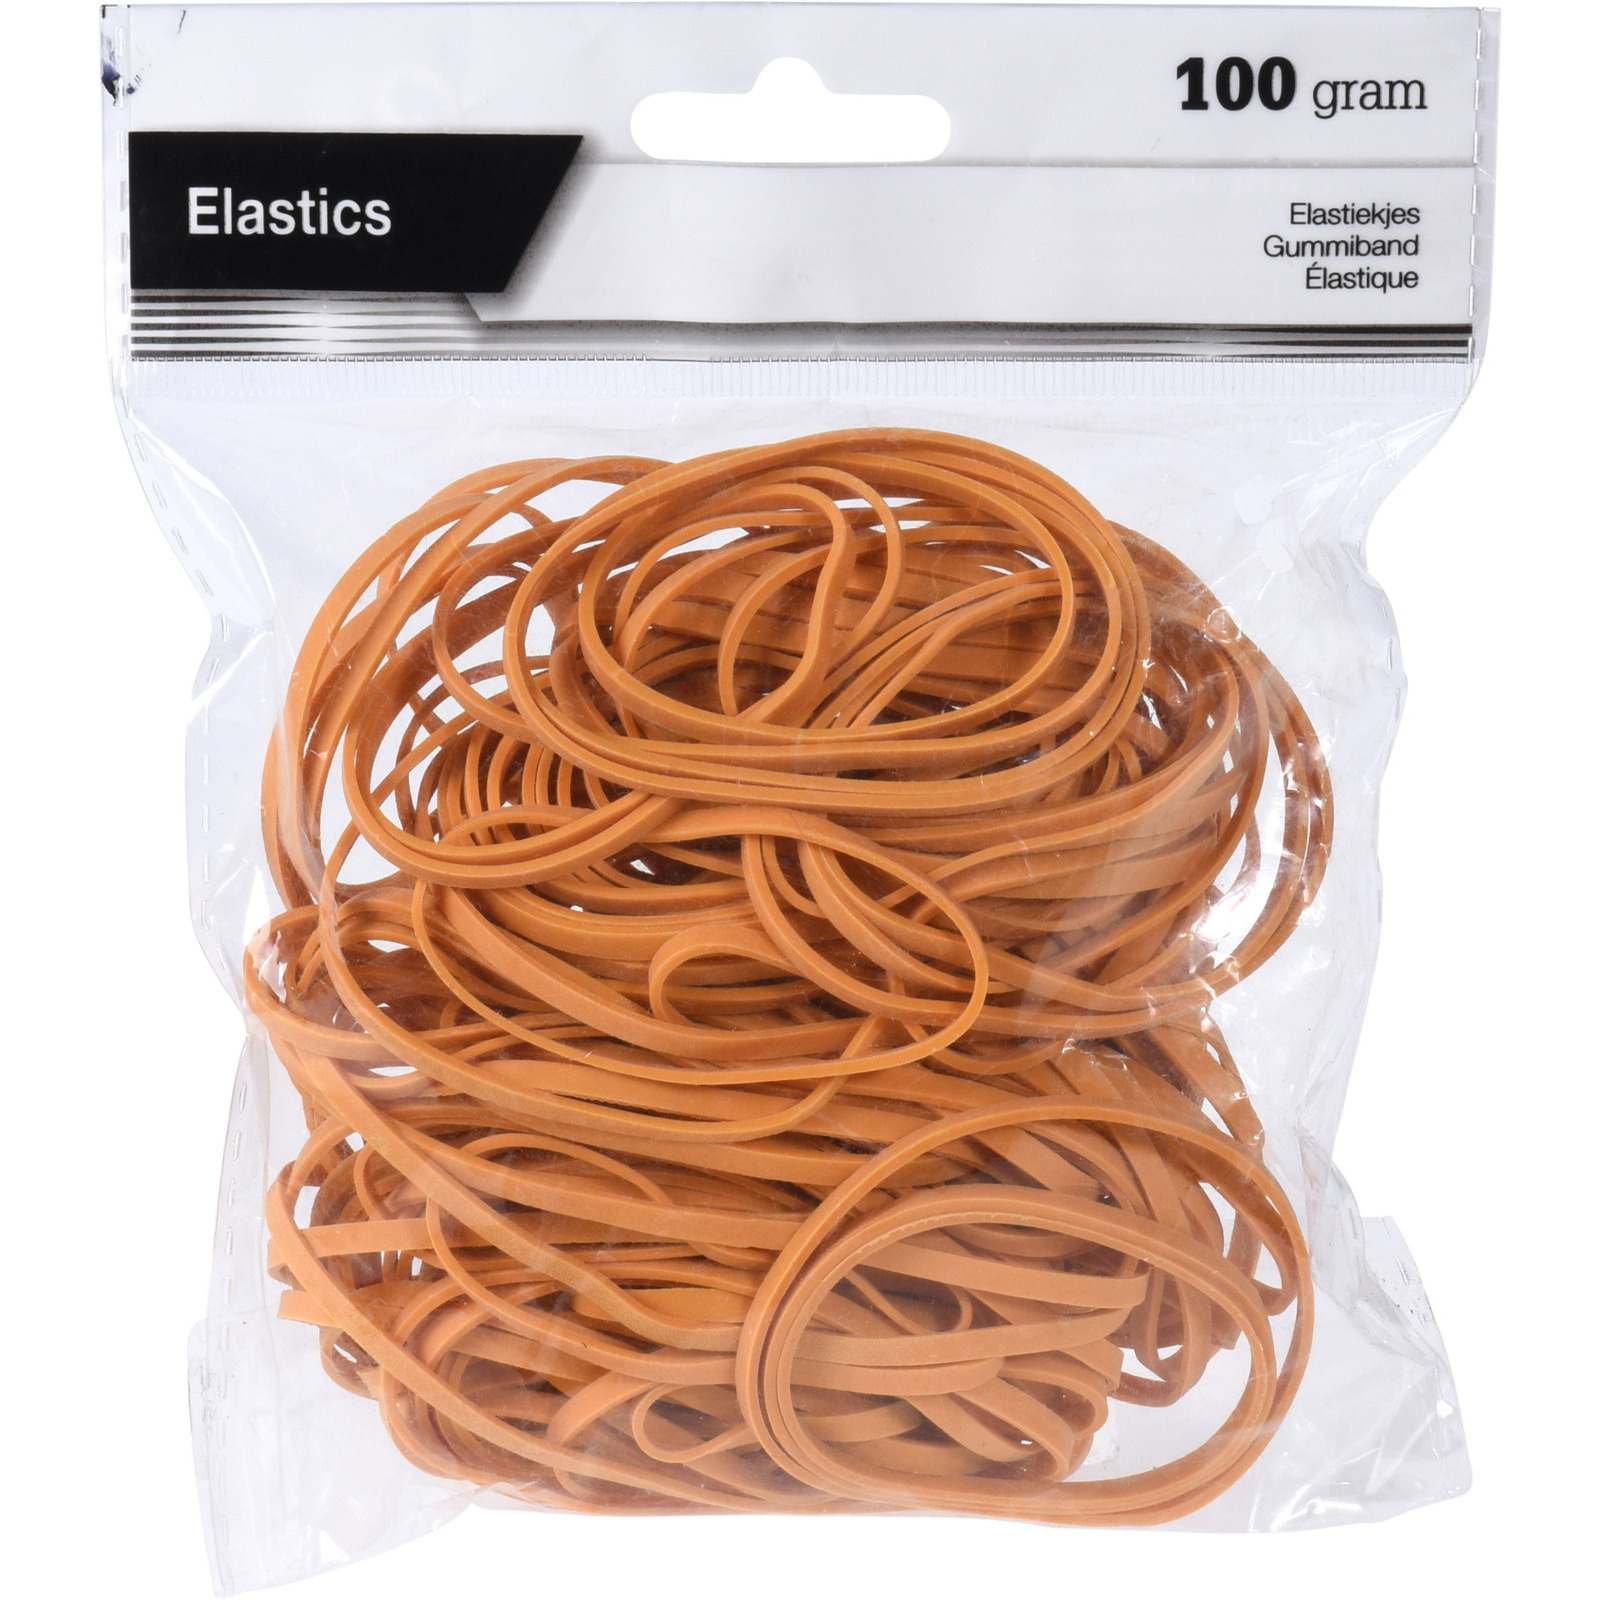 Knutsel/hobby/kantoor zak elastiekjes bruine 100 gram